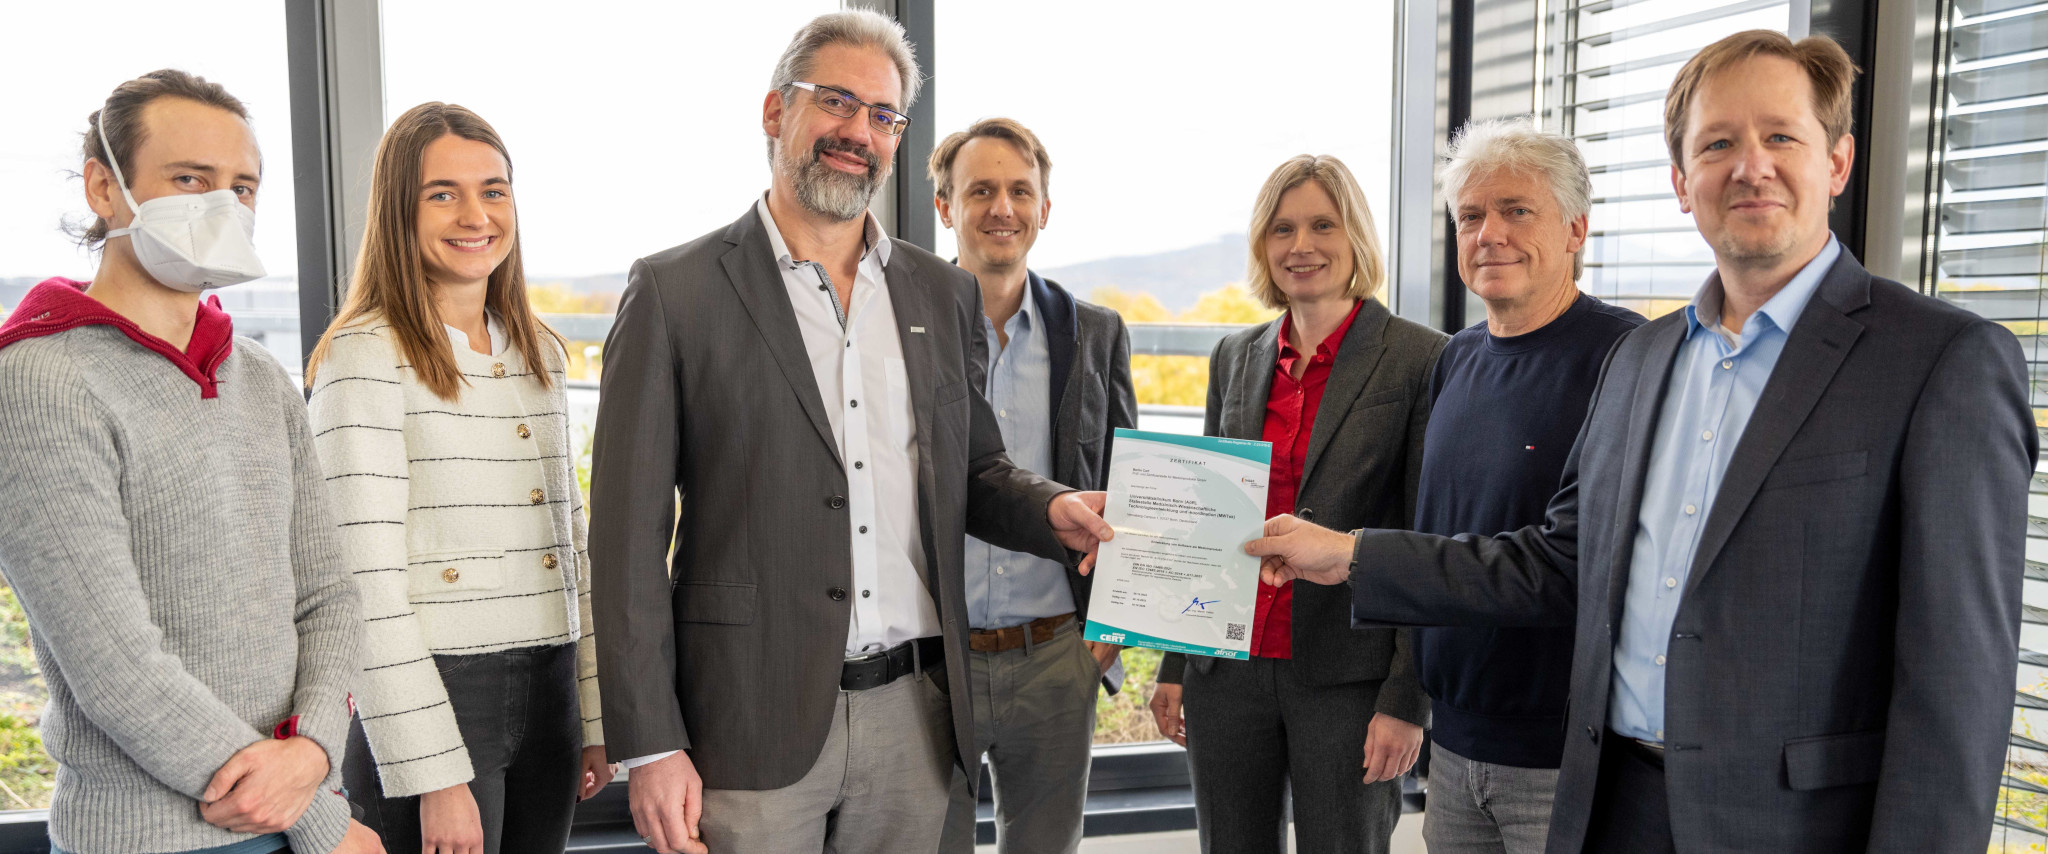 Das Qualitätsmanagementsystem des Universitätsklinikums Bonn wurde für die Entwicklung von Software als Medizinprodukt zertifiziert